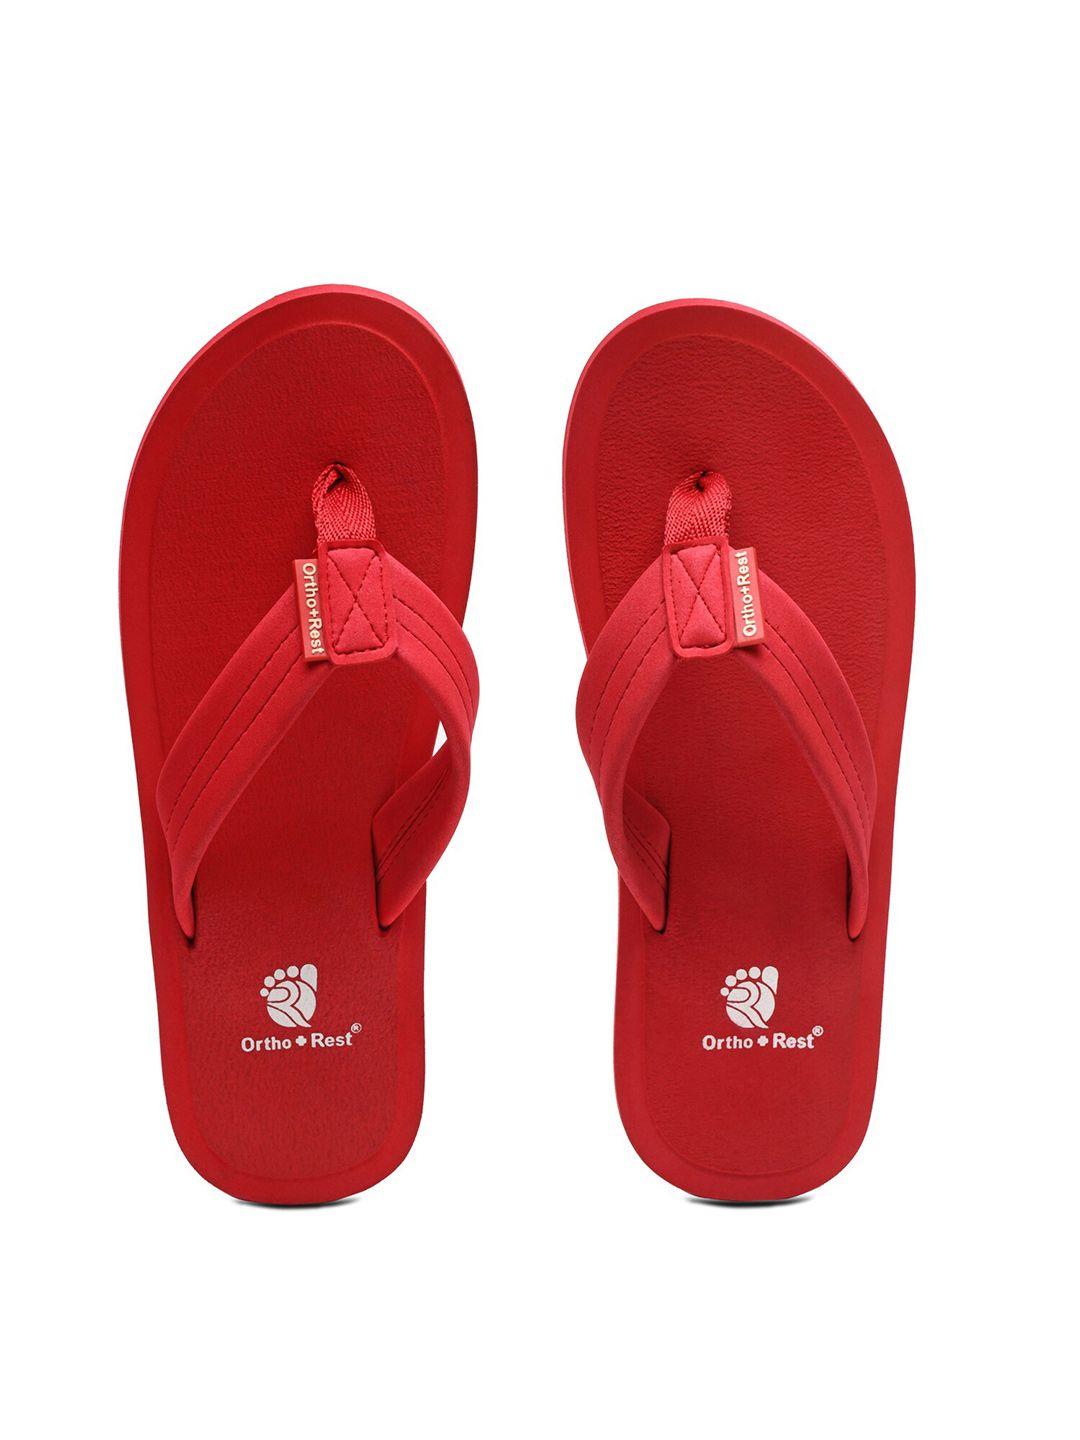 ortho rest women red & white thong flip-flops